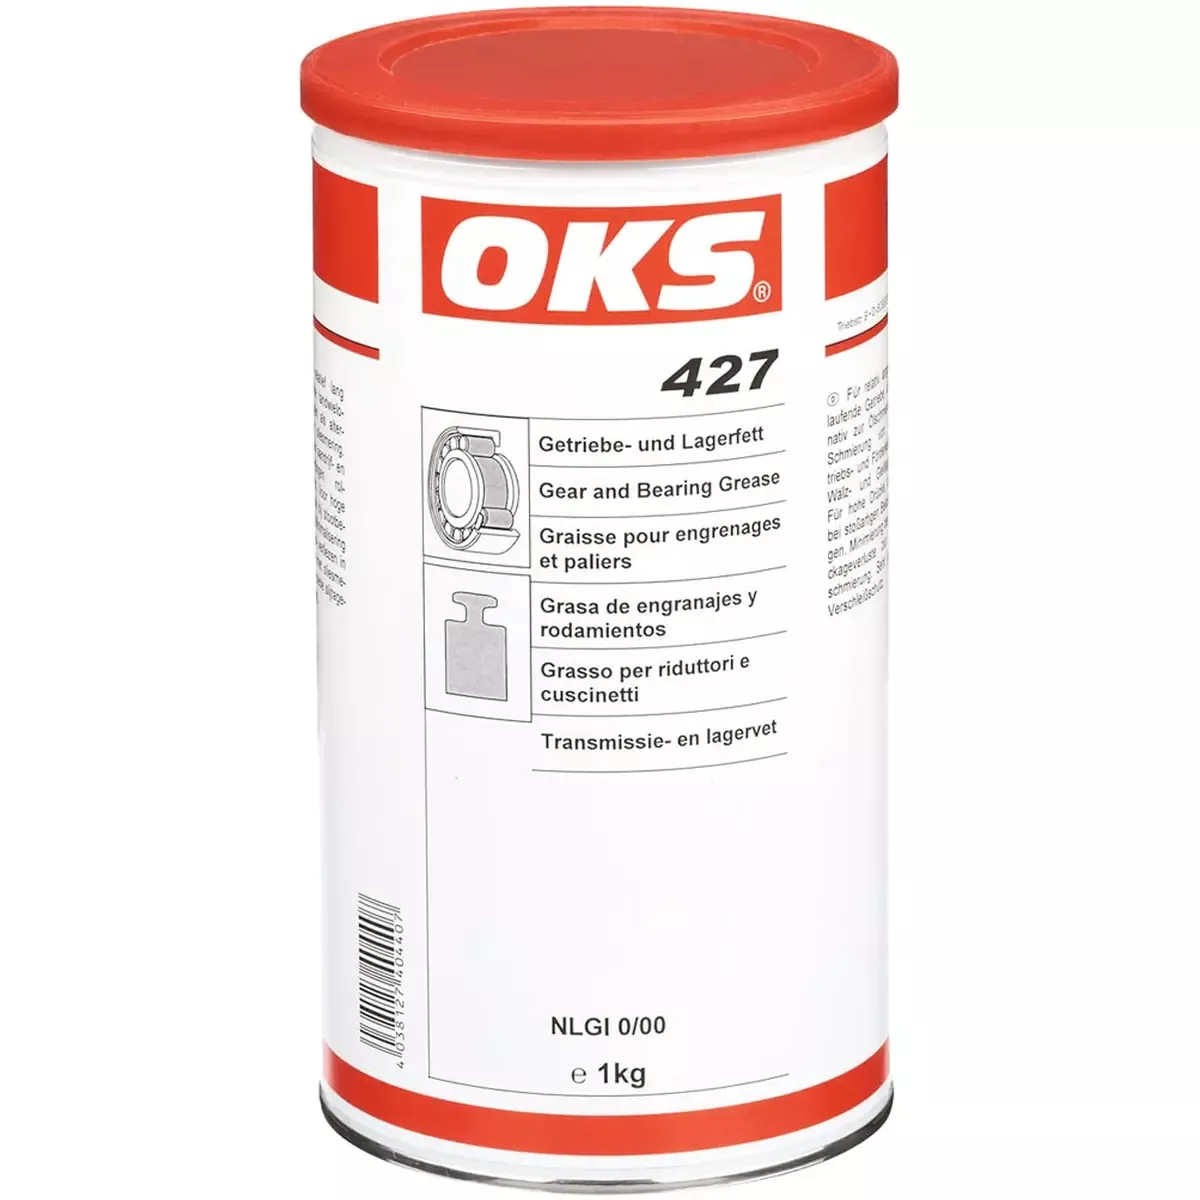 OKS 427 Getriebe und Lagerfett 1 kg Dose